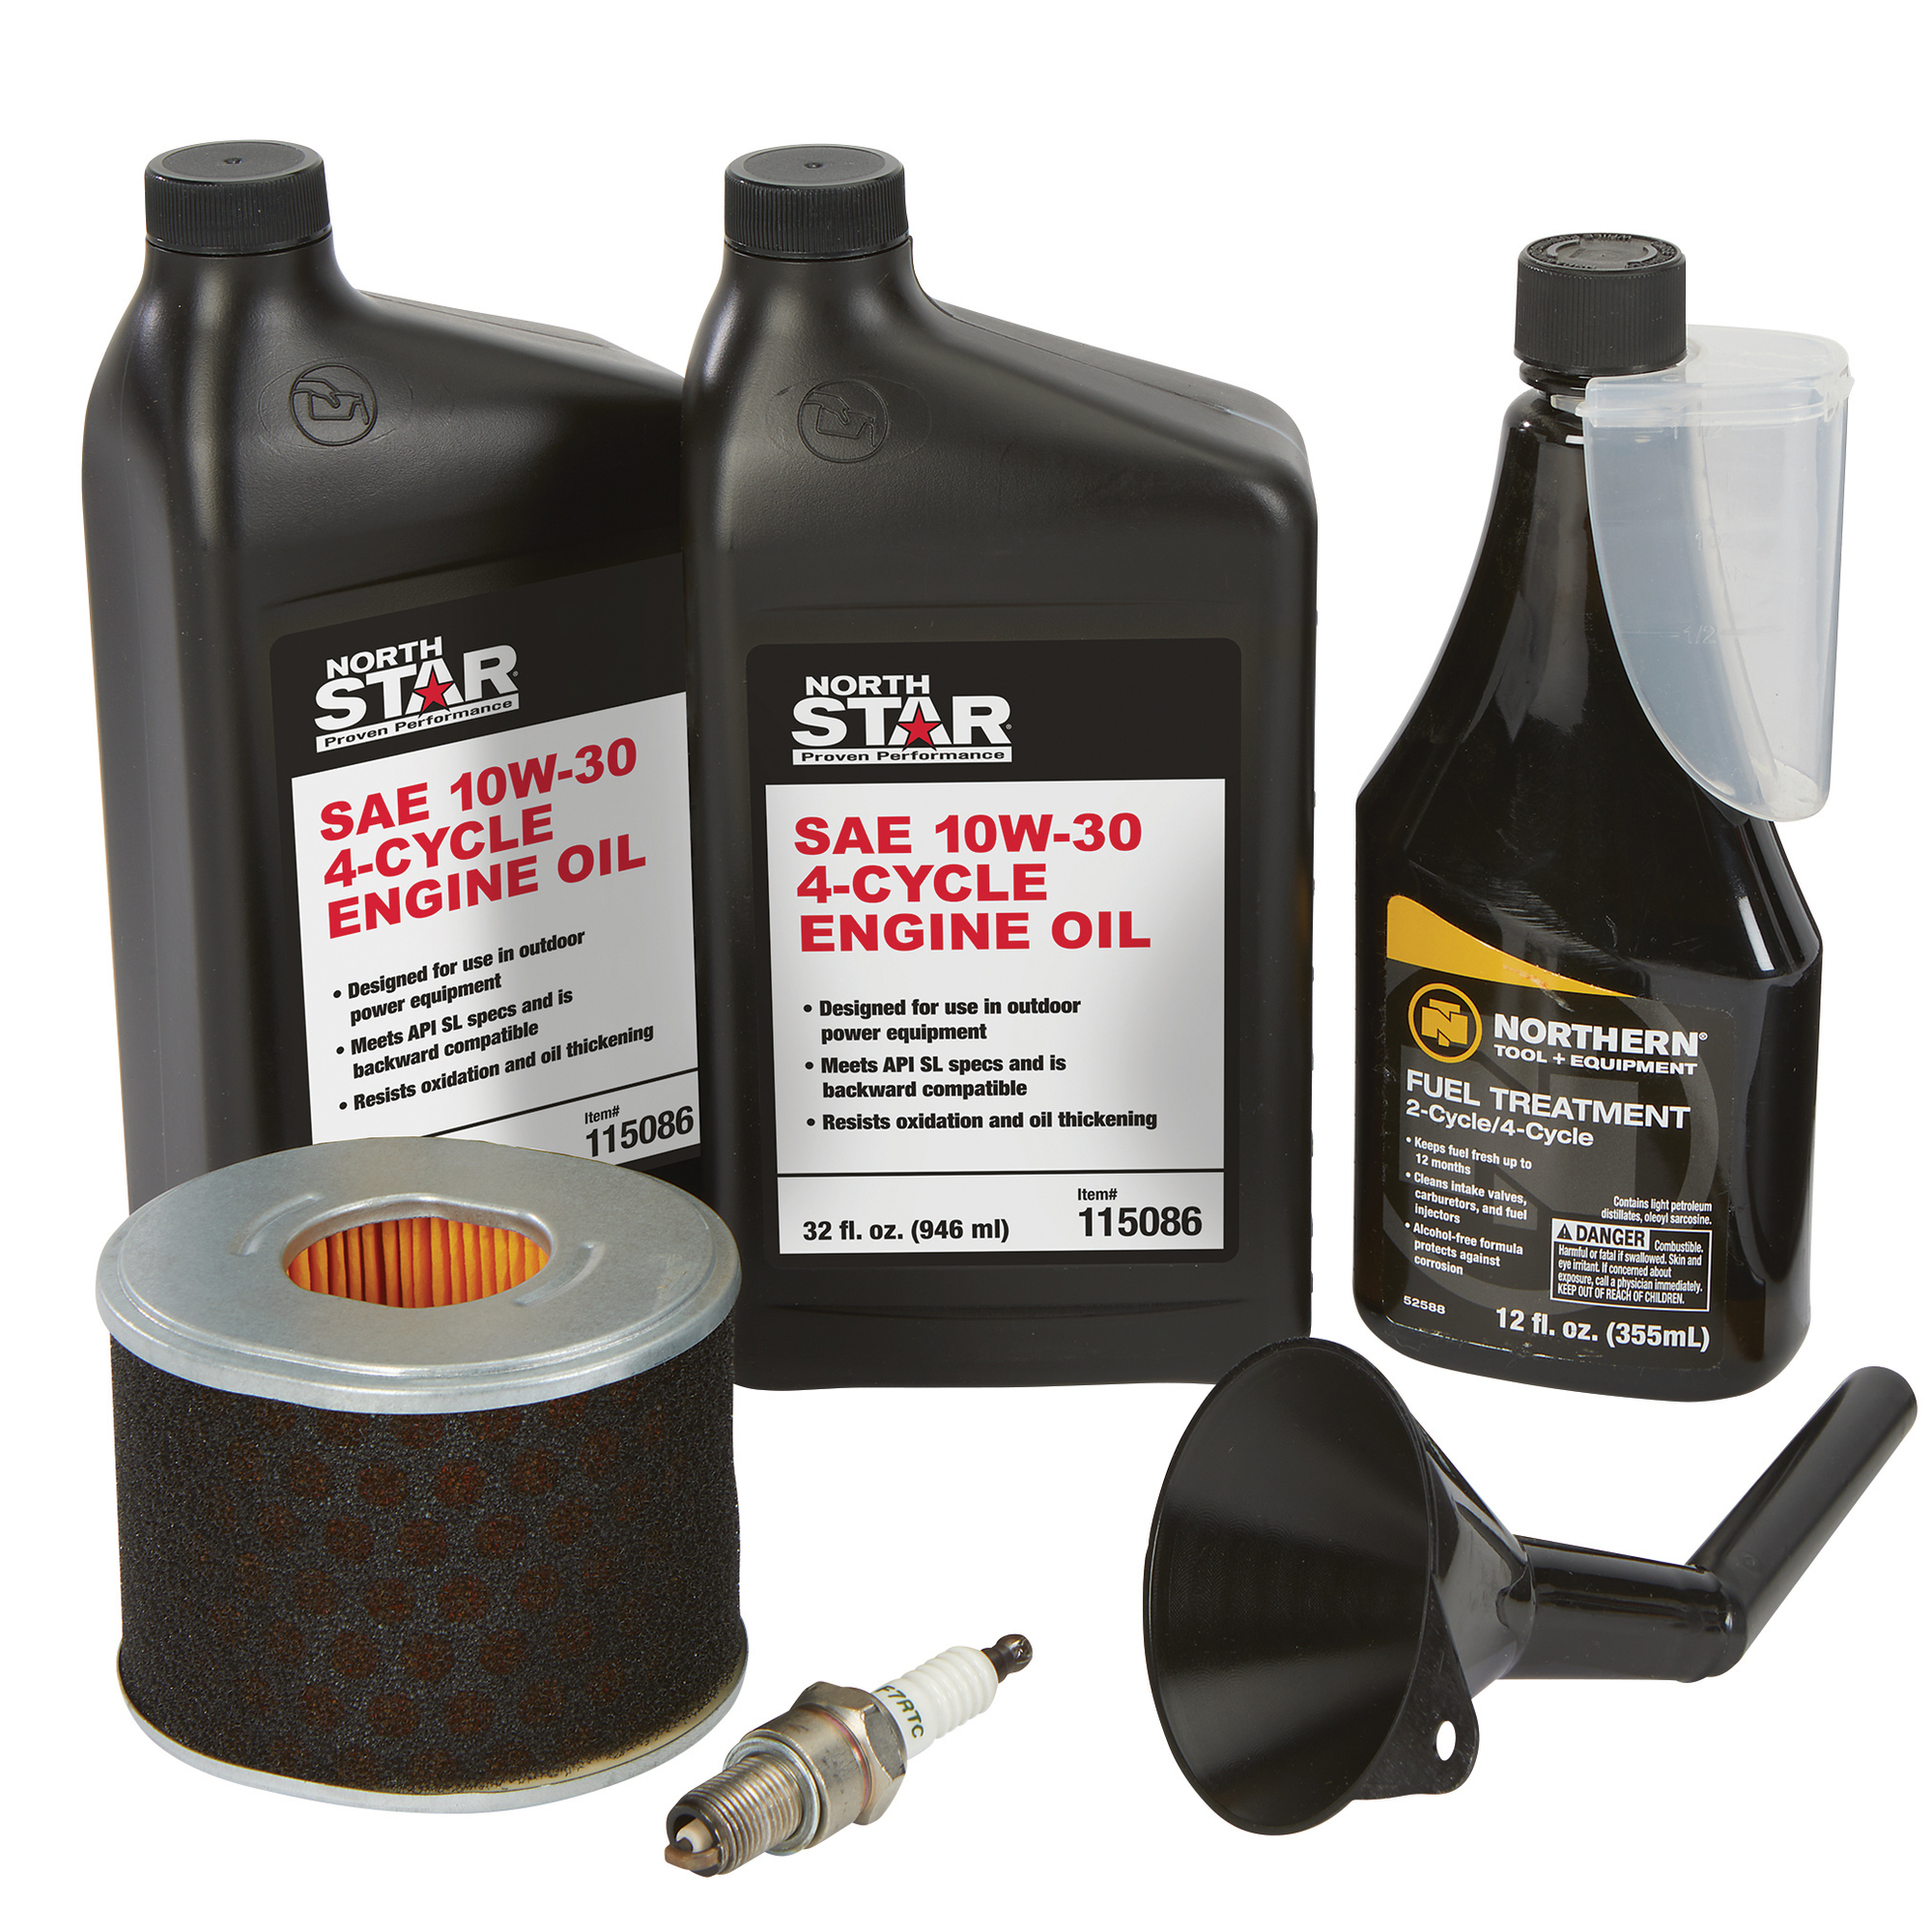 NorthStar Maintenance Kit for NorthStar 300CC Engine, 2 Qts. 10/30W Oil, 12-Oz. Fuel Additive, 1 Filter, 1 Spark Plug, Model 805643